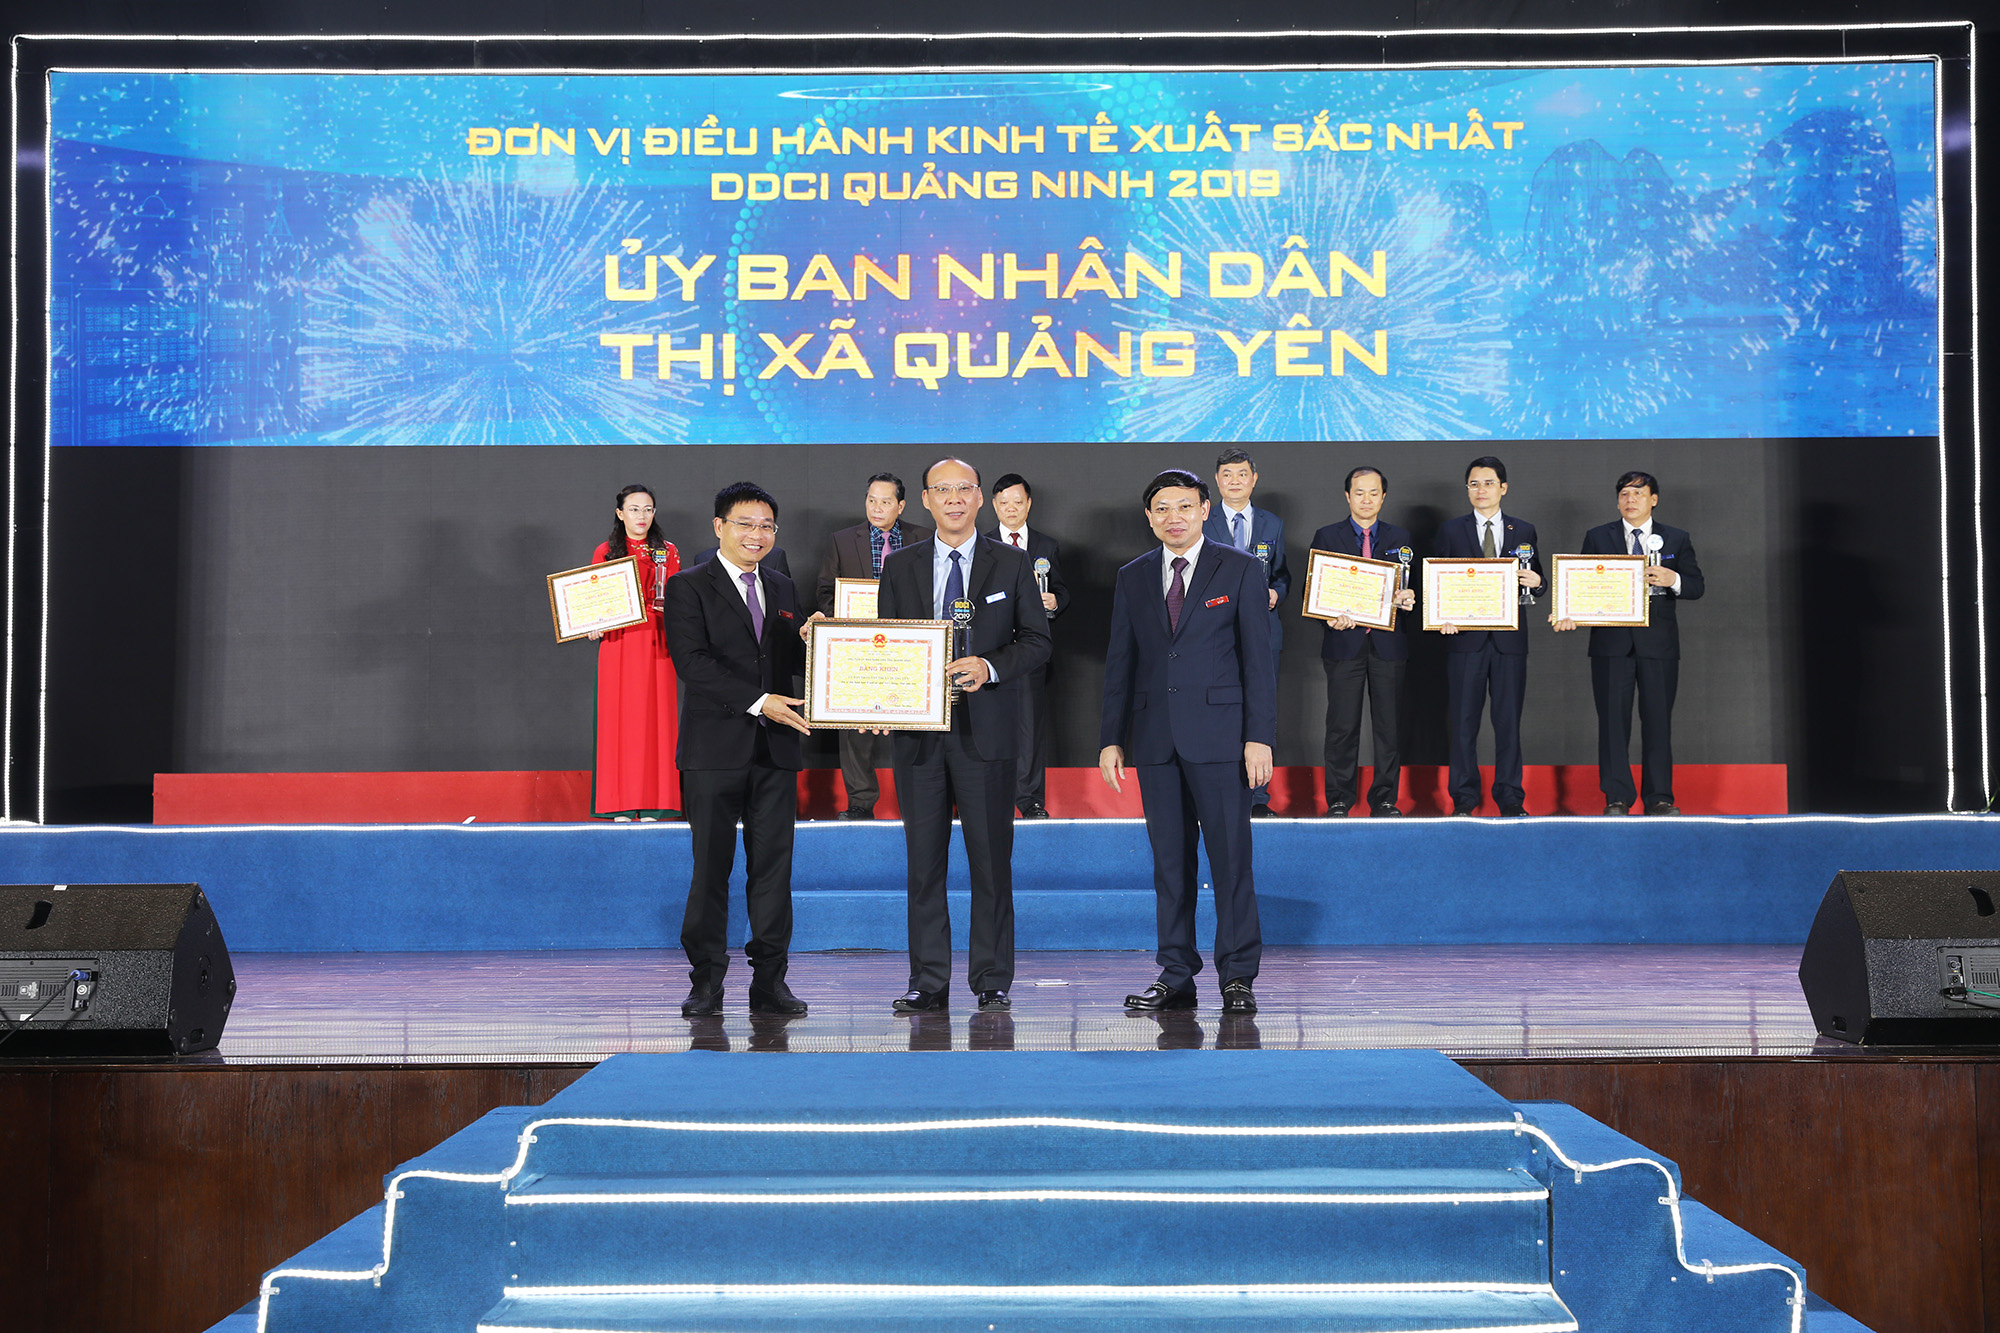 Các đồng chí lãnh đạo tỉnh trao Kỷ niệm chương và Bằng khen cho TX Quảng Yên.